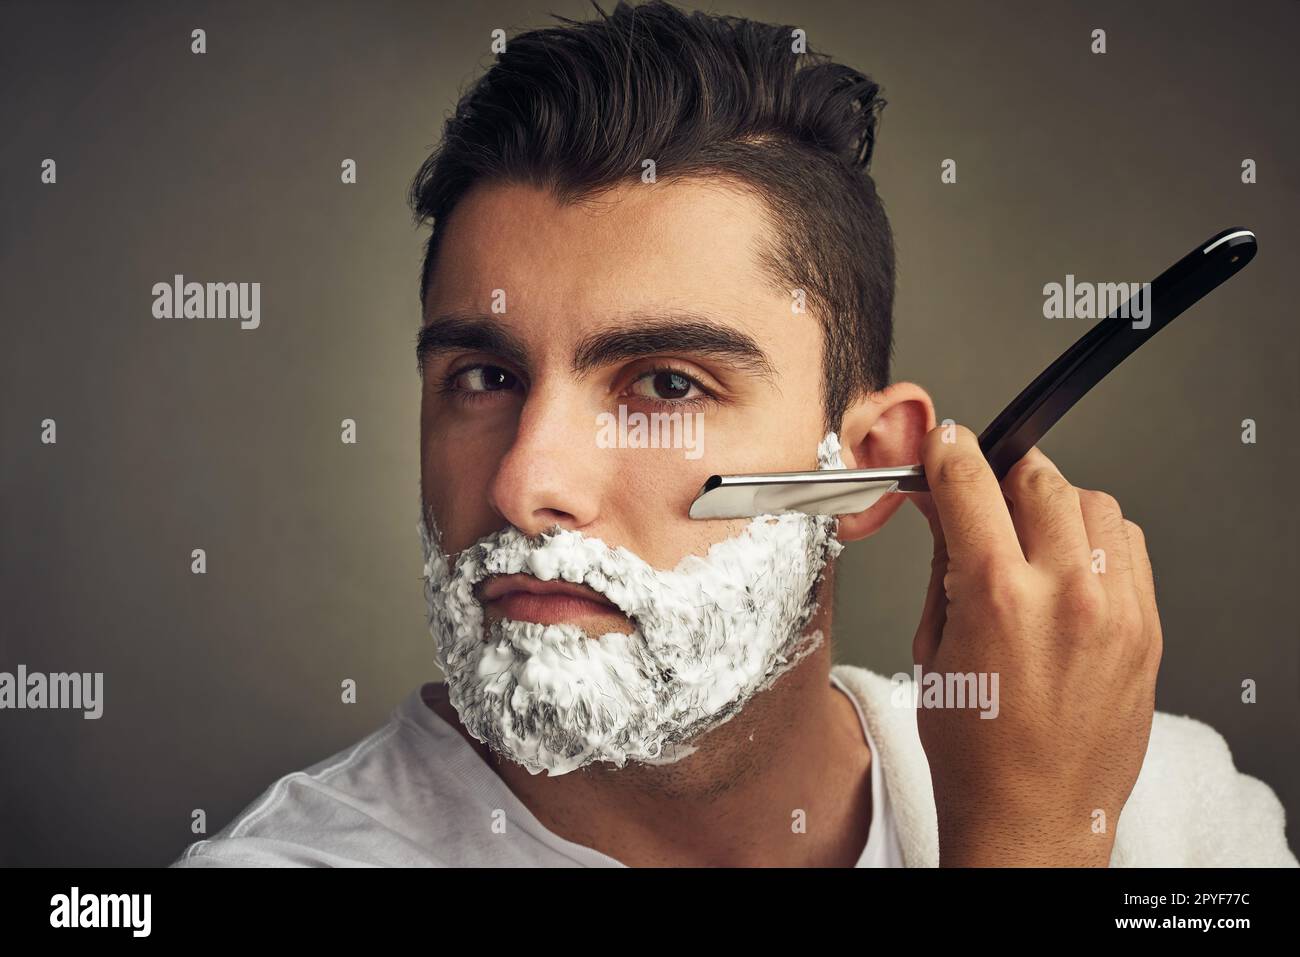 Achten Sie darauf, dass sie ordentlich und getrimmt ist. Ein hübscher junger Mann, der sich mit einem Rasierer rasiert. Stockfoto